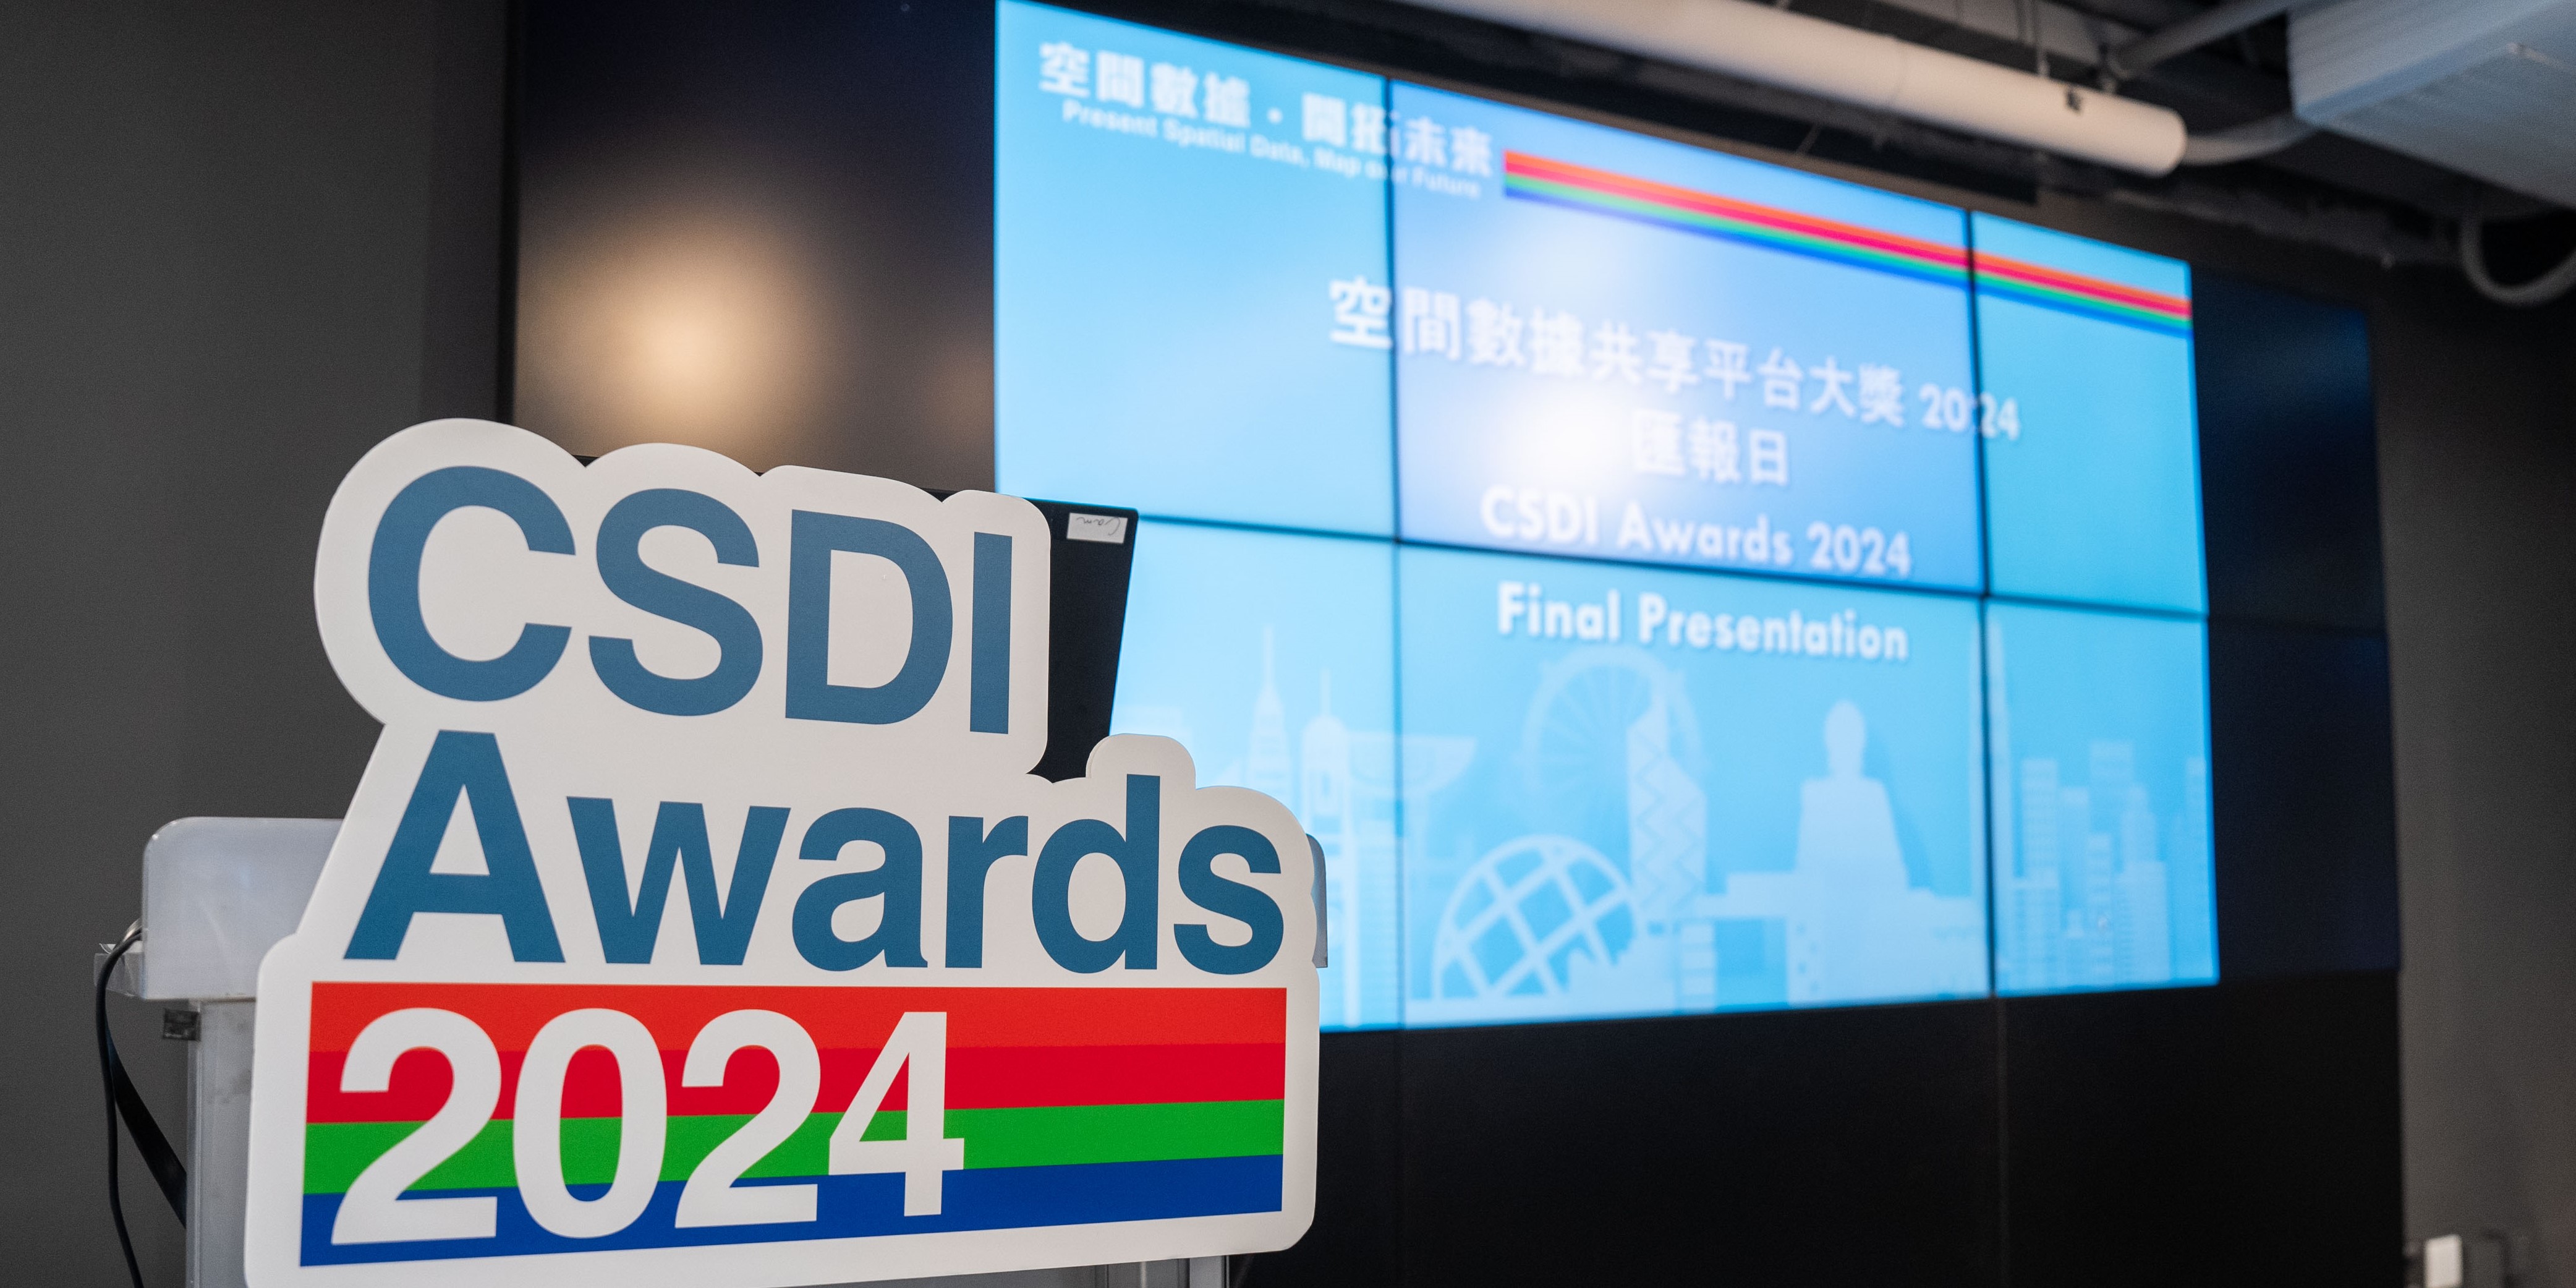 CSDI Awards 2024 Final Presentation